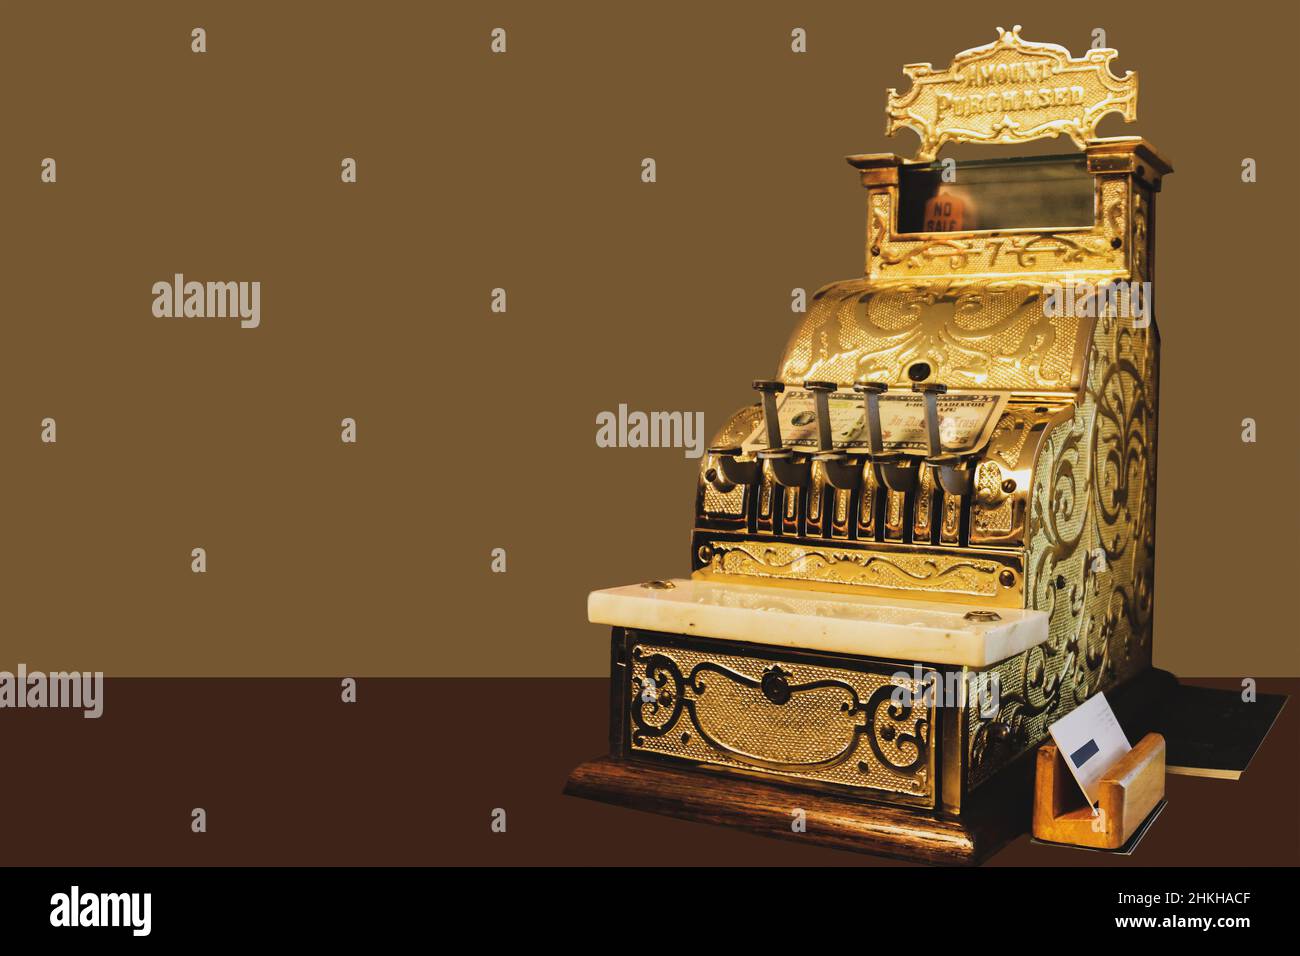 Elegante cassa ornata d'oro sul banco con la fattura posata su di esso e il titolare della carta da visita e ledger accanto ad esso sul banco - stanza per la copia Foto Stock